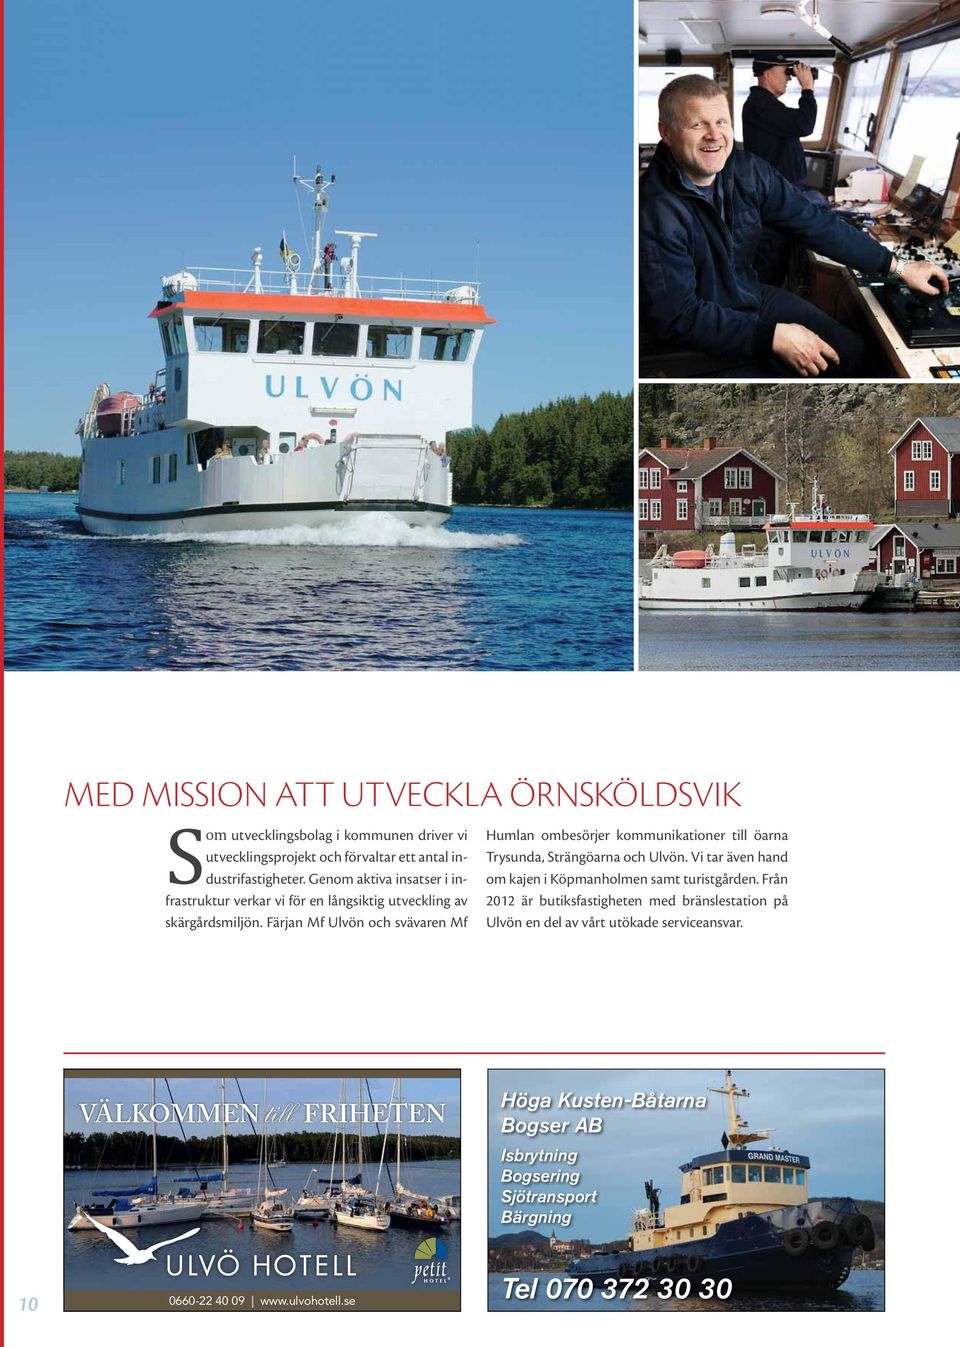 Färjan Mf Ulvön och svävaren Mf Humlan ombesörjer kommunikationer till öarna Trysunda, Strängöarna och Ulvön.